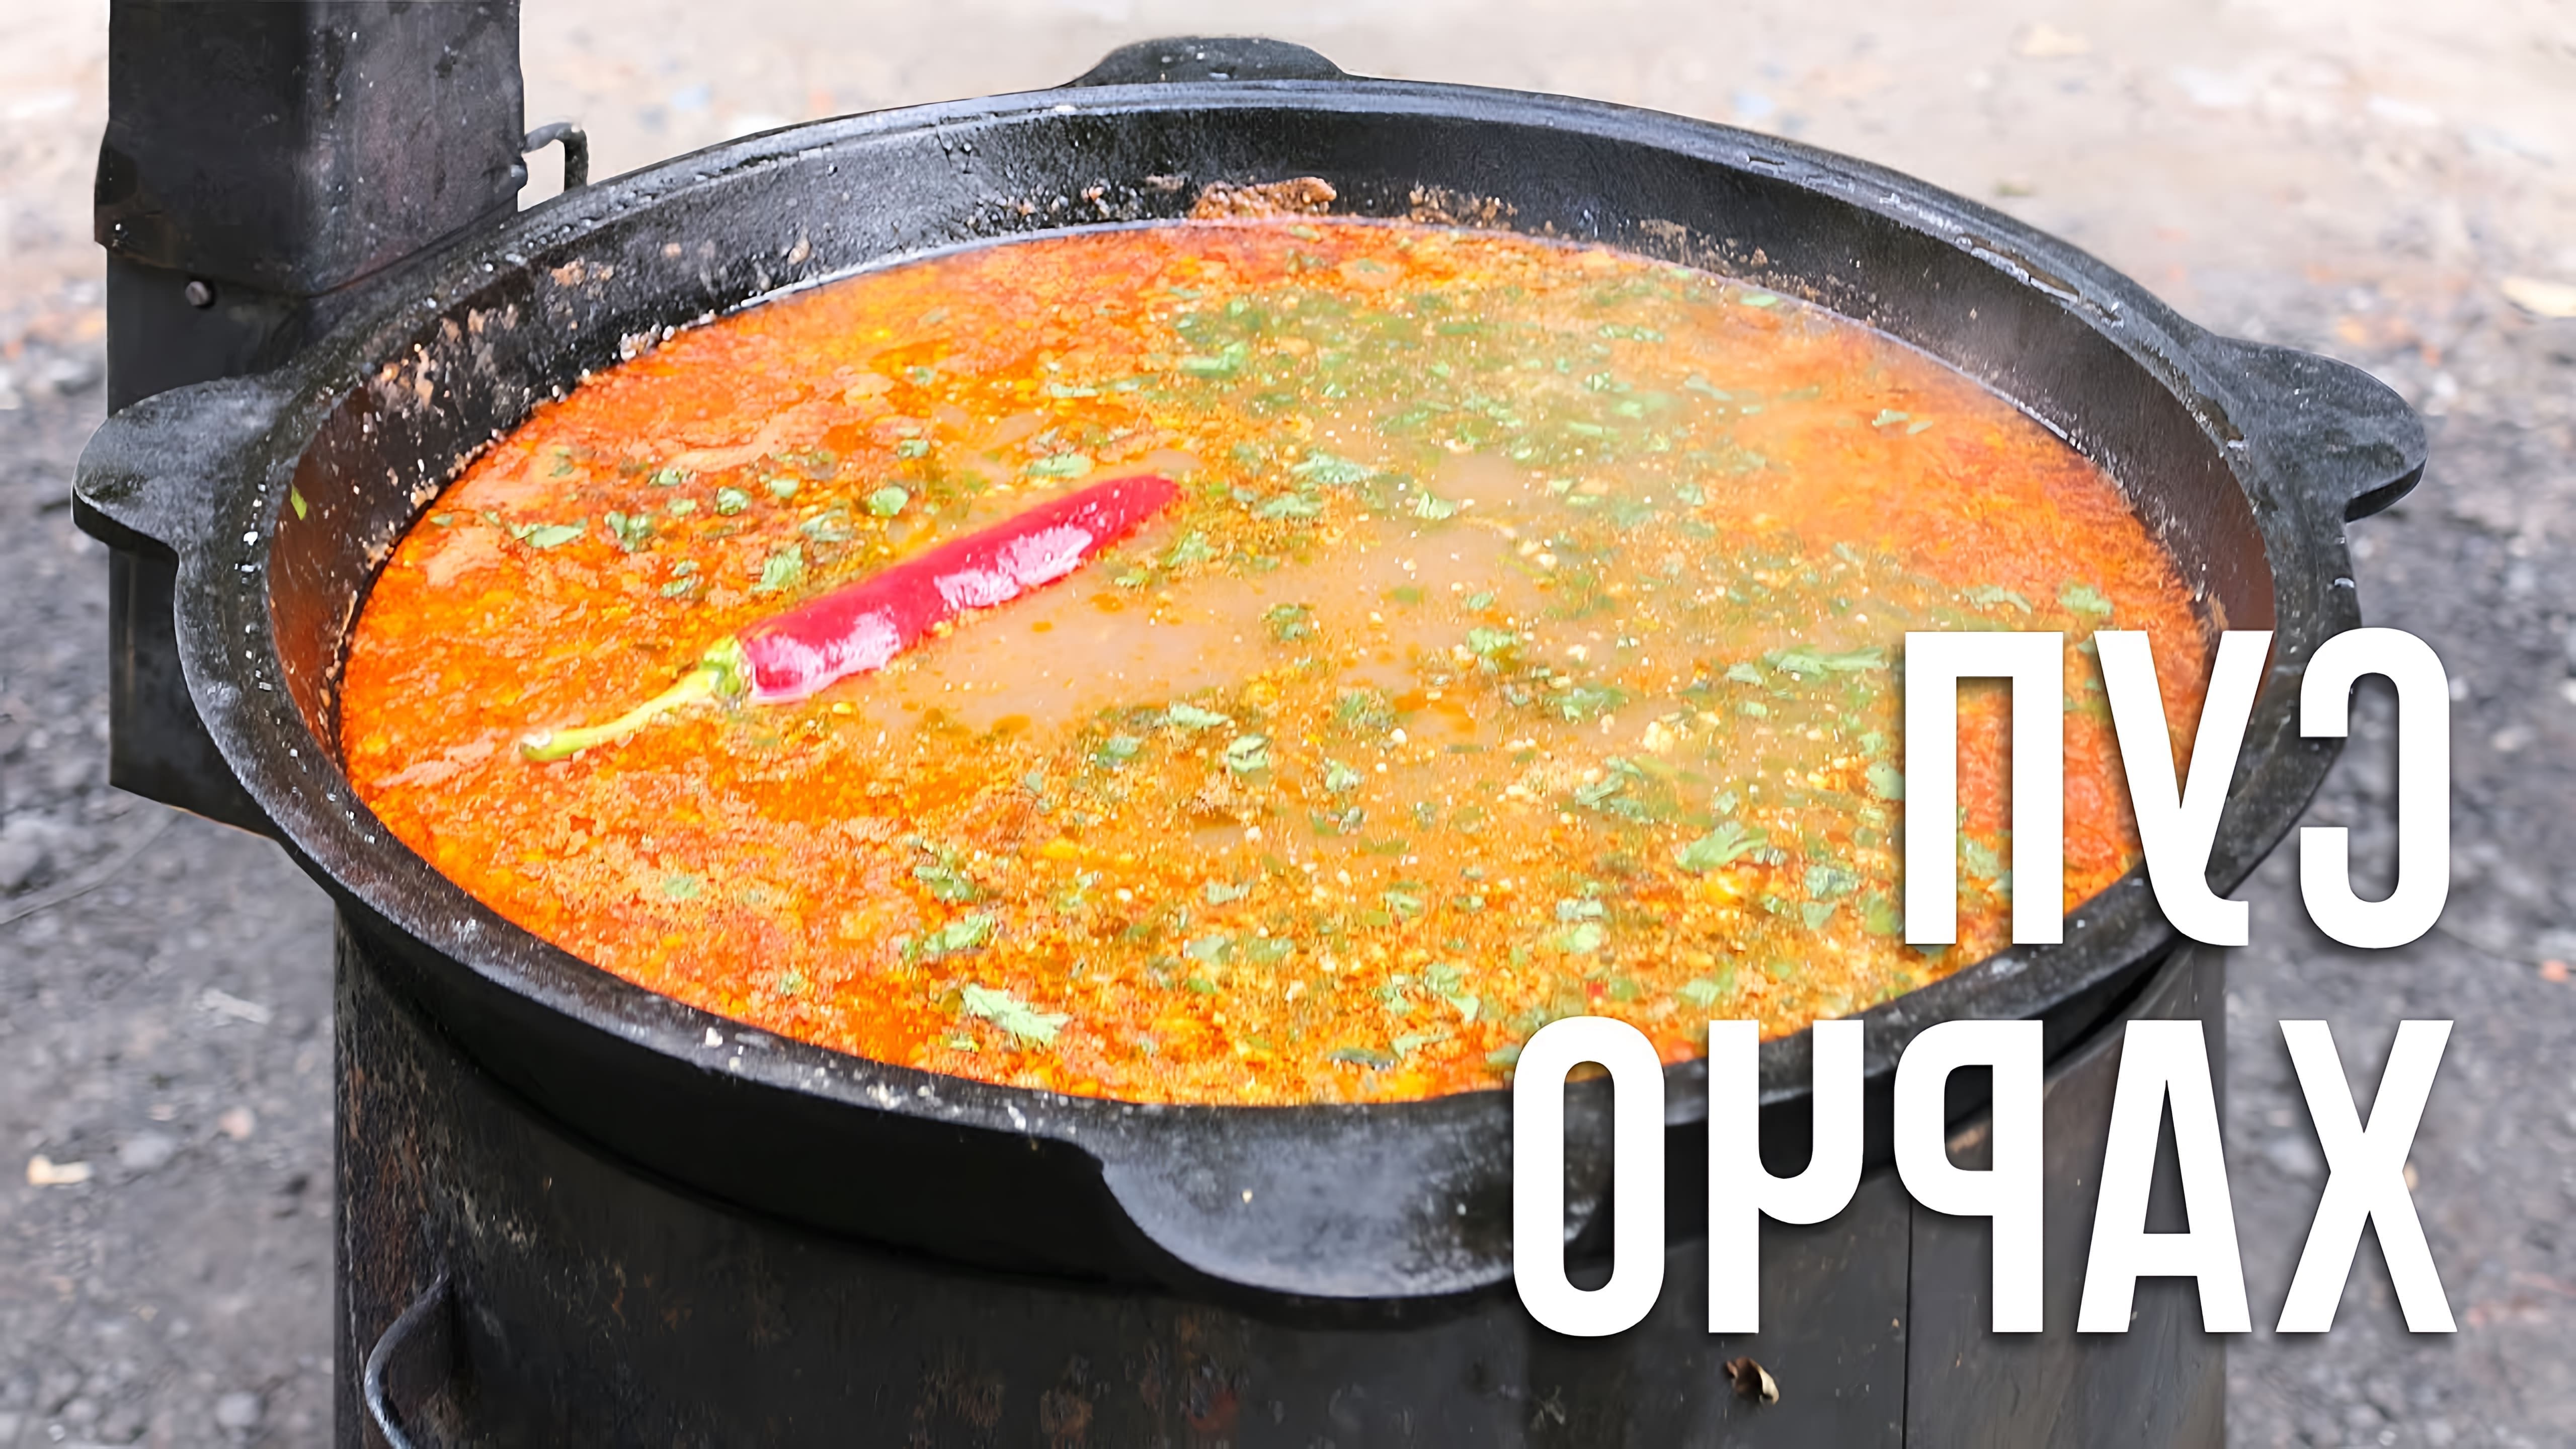 В данном видео демонстрируется процесс приготовления супа харчо в казане на костре